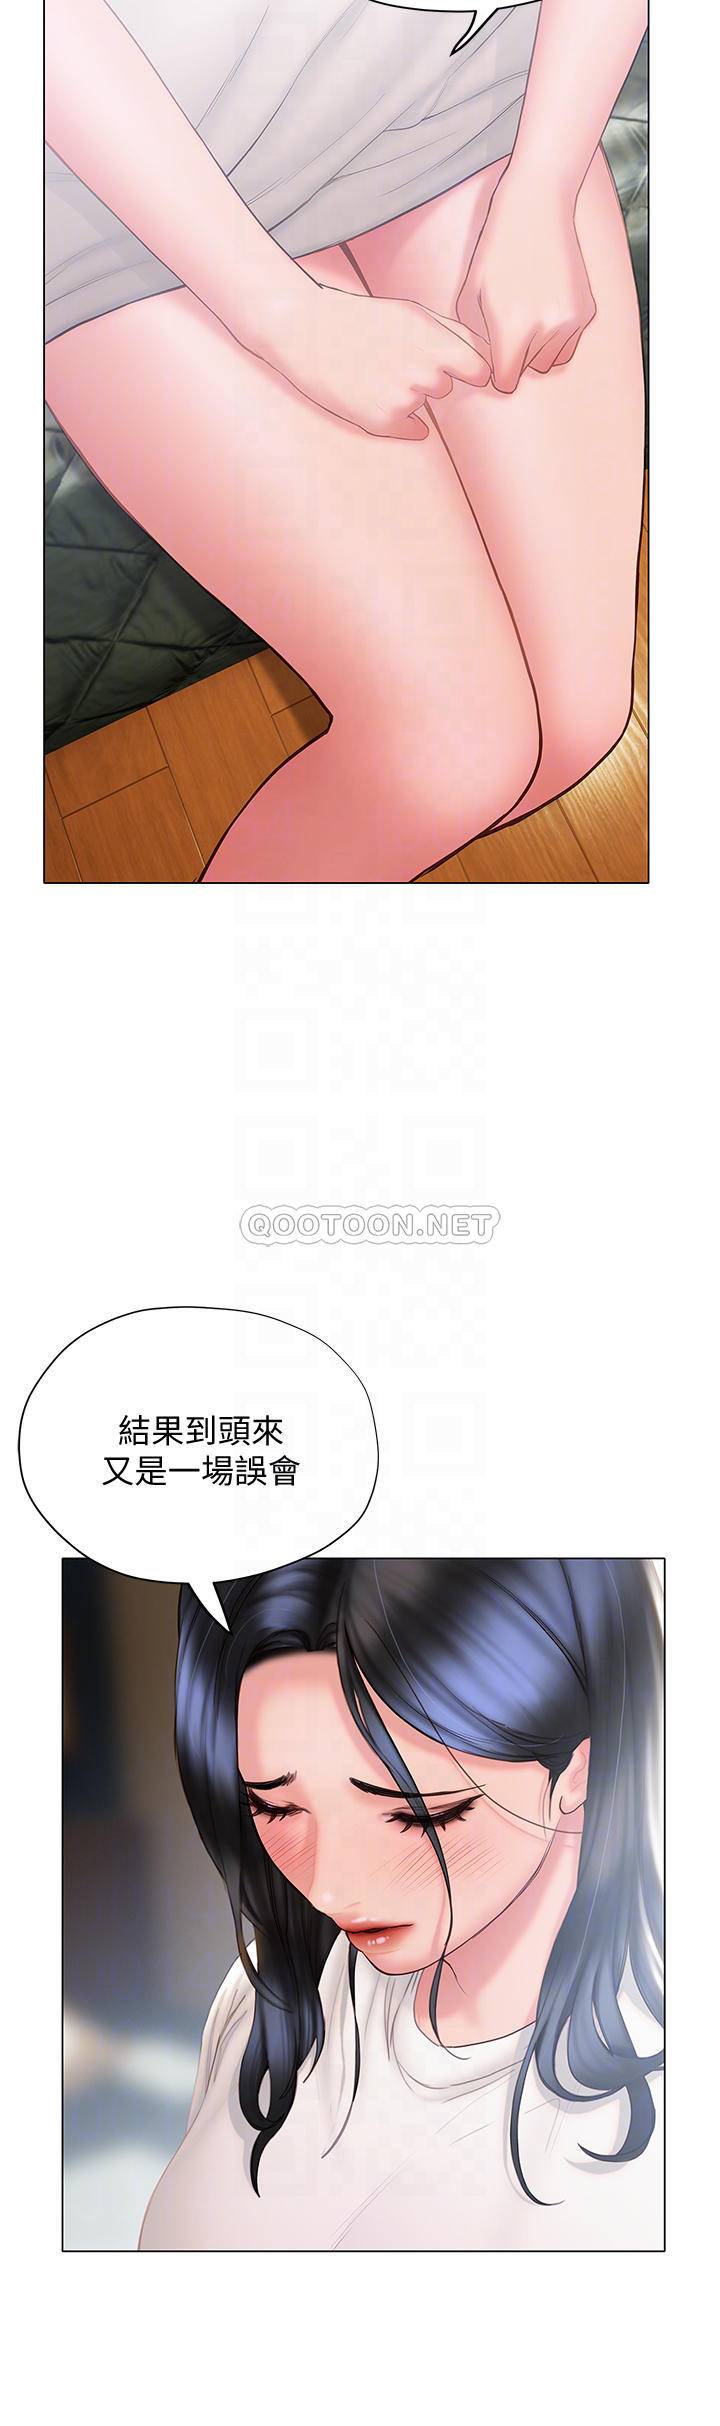 韩国污漫画 終曖昧結 第32话初恋心动不已的第一次 10